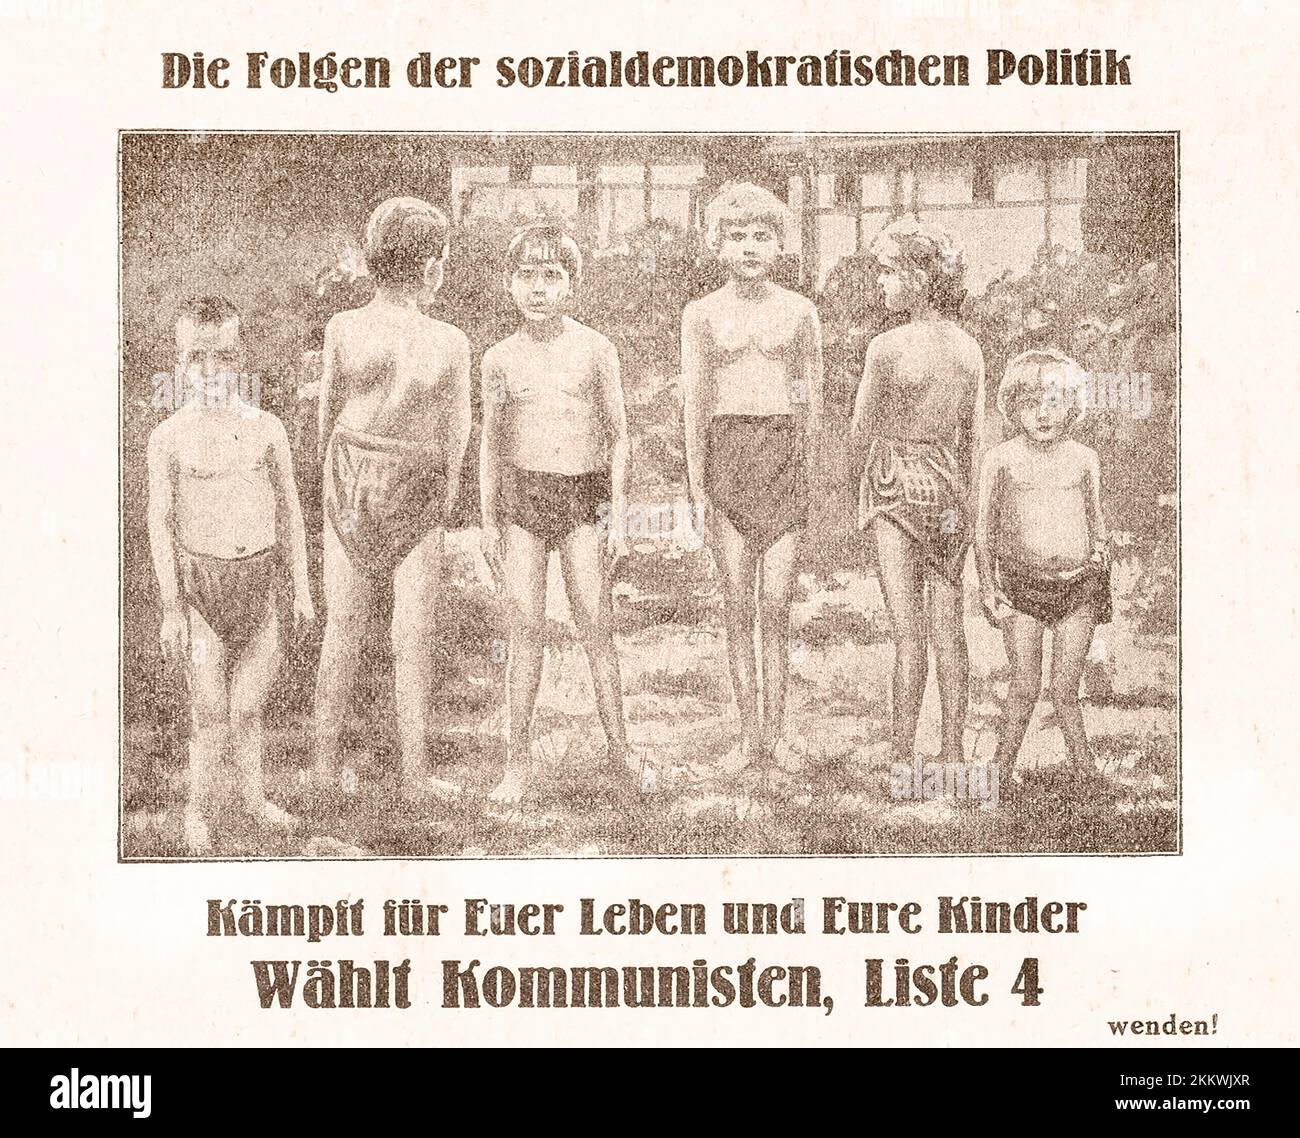 Broschüre der Kommunistischen Partei Deutschlands - Сonsequences der Politik der Sozialdemokraten. - Wahlflyer. Deutschland, 1924. Stockfoto